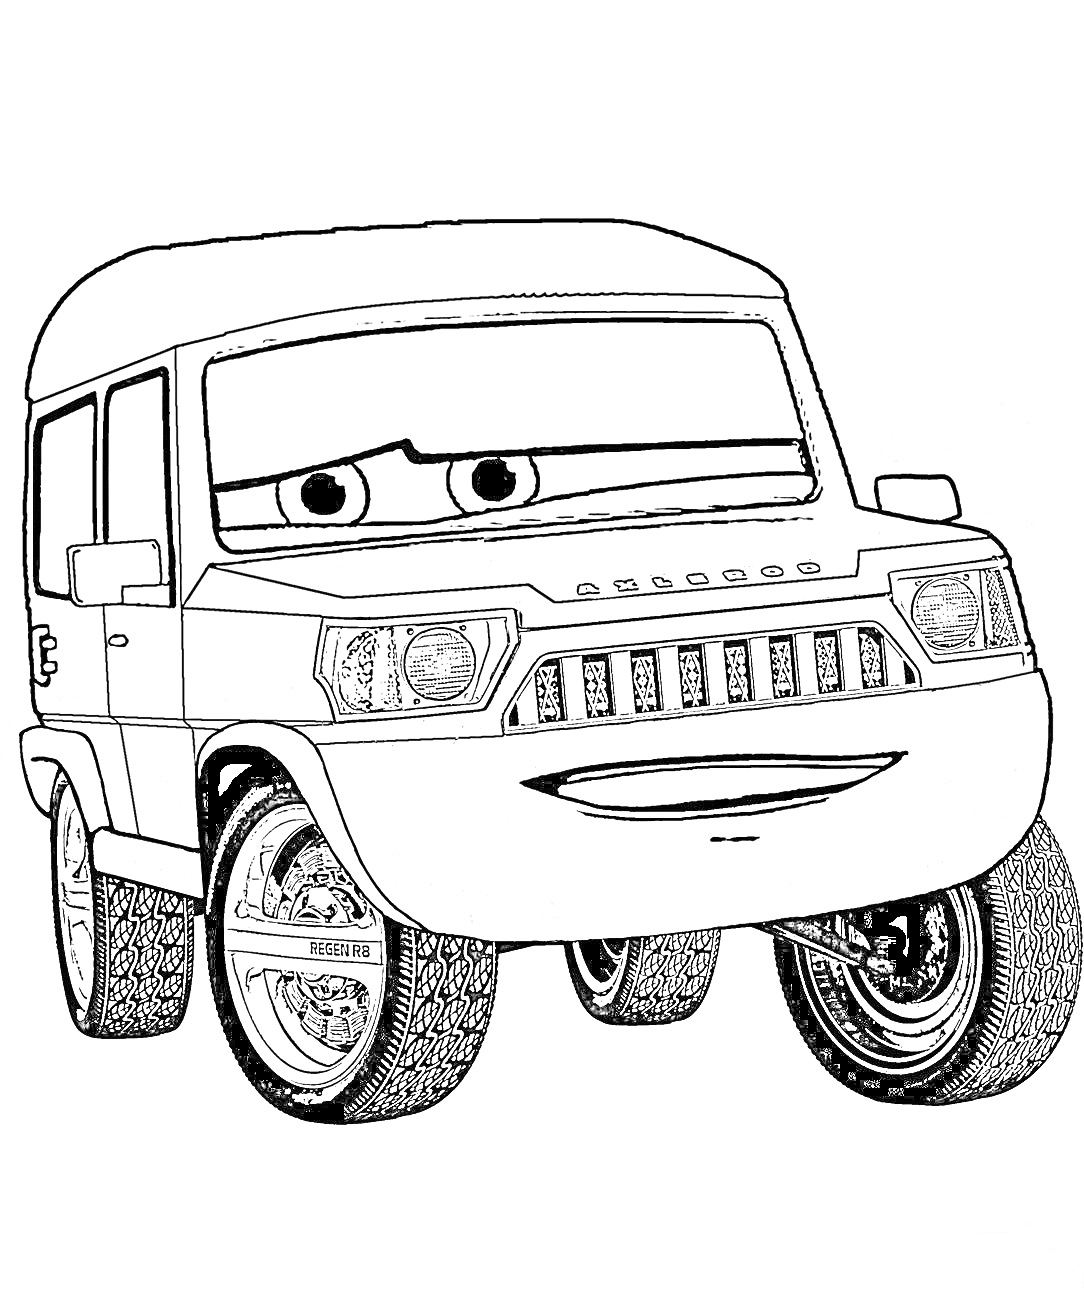 Джип с выражением лица, большие колеса и детализированные фары